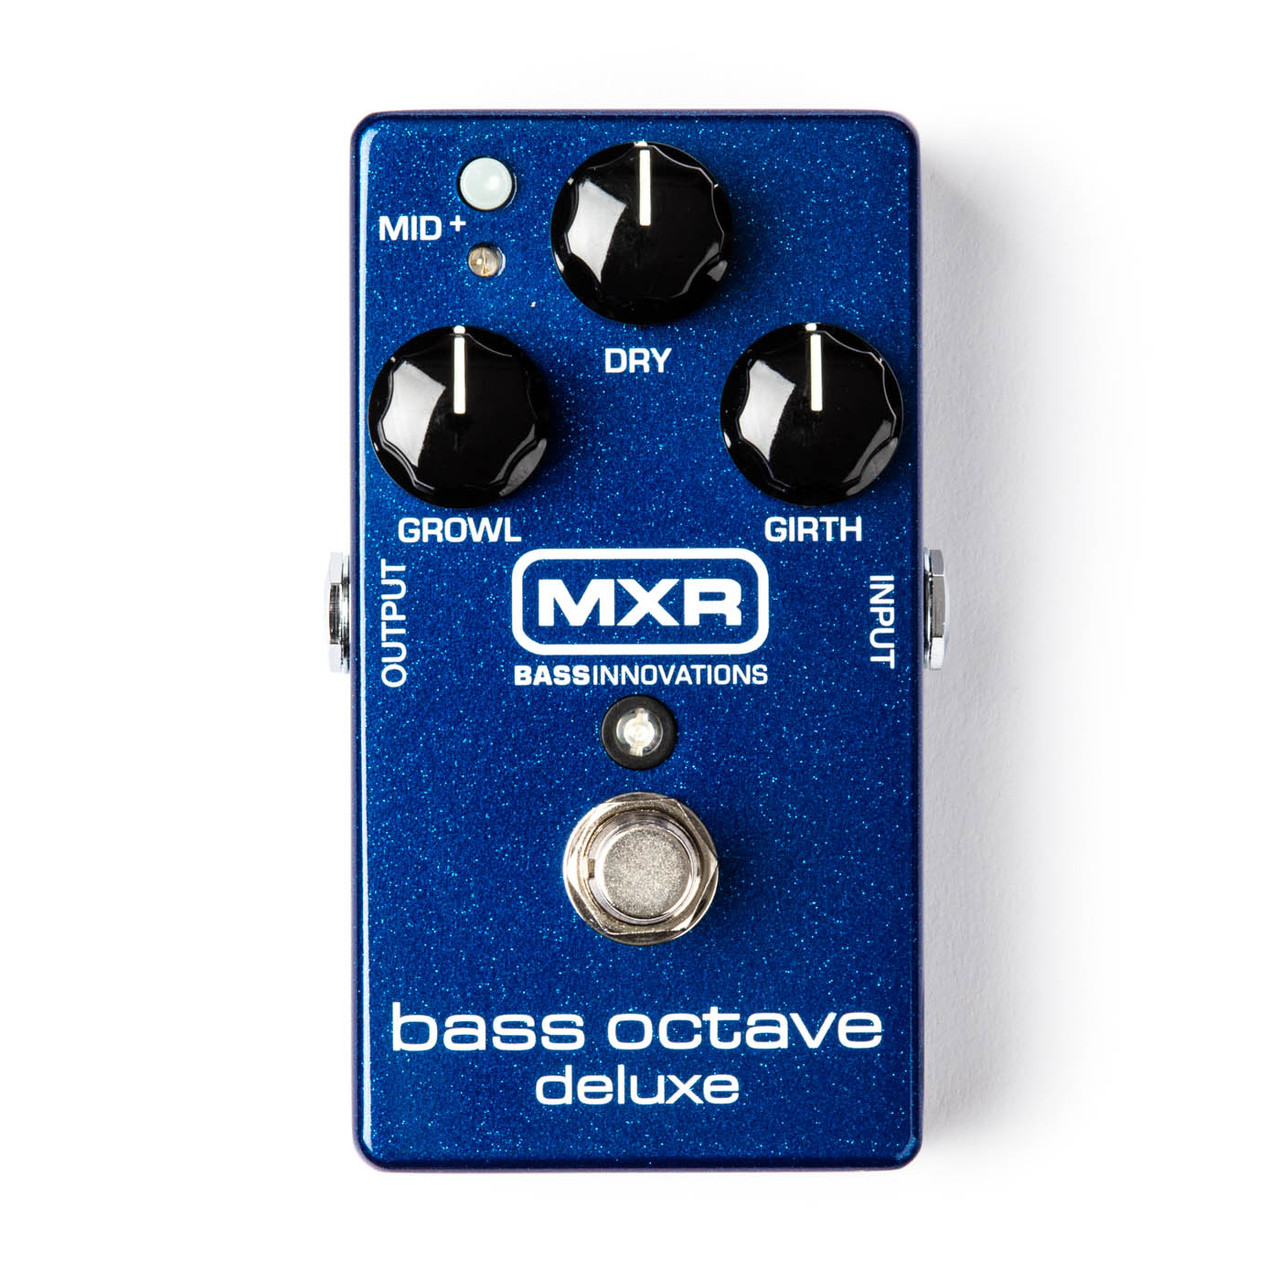 Процессоры эффектов и педали для гитары MXR M288 Bass Octave Deluxe педаль эффектов overdrive для гитары high gain для бас струнного инструмента для электрогитары